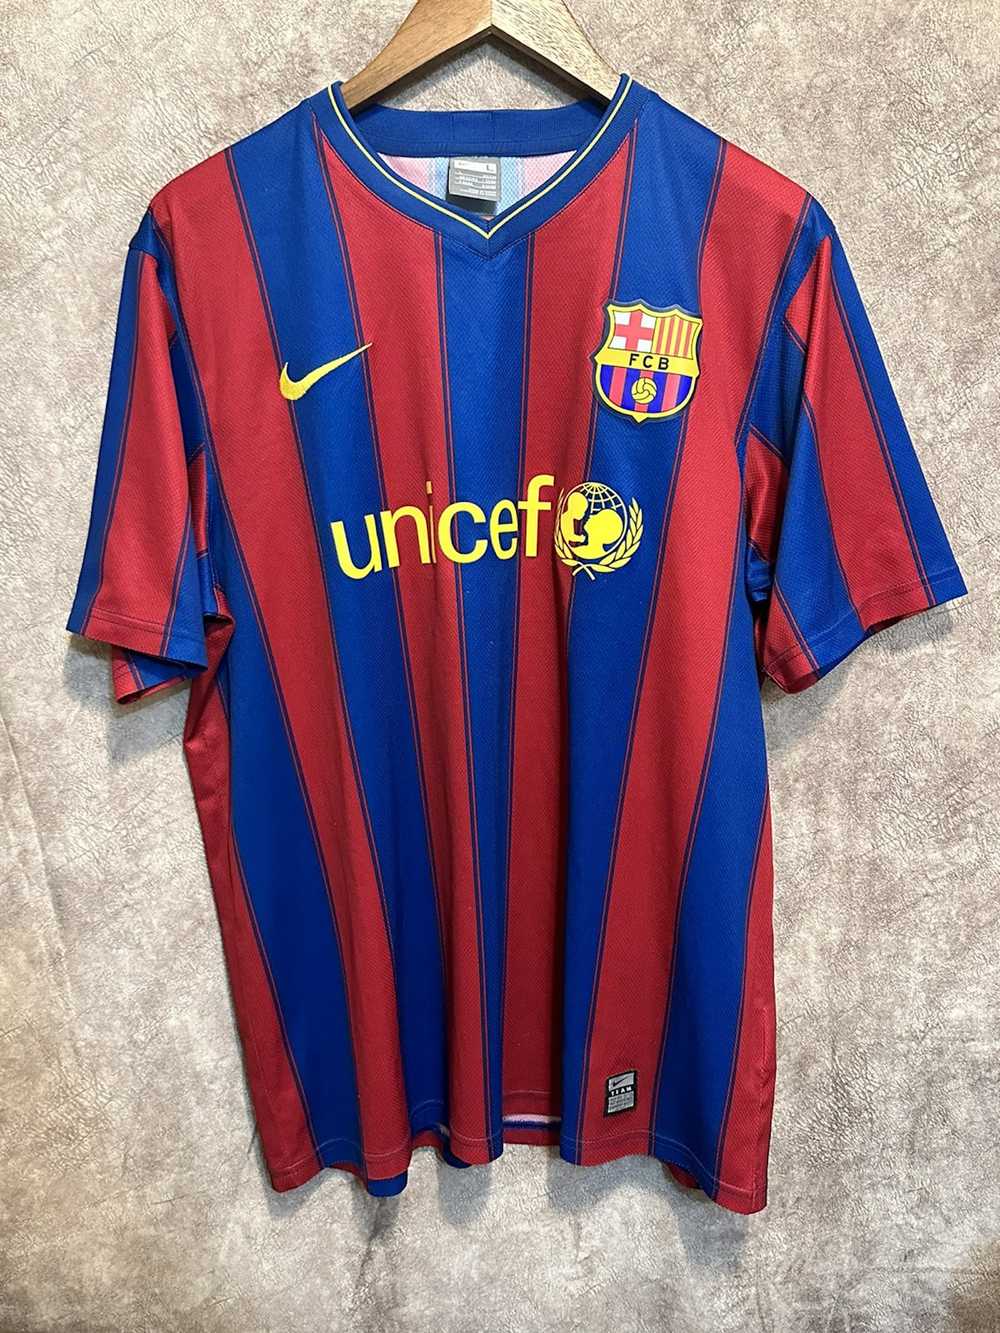 F.C. Barcelona × Soccer Jersey × Vintage Barcelon… - image 1